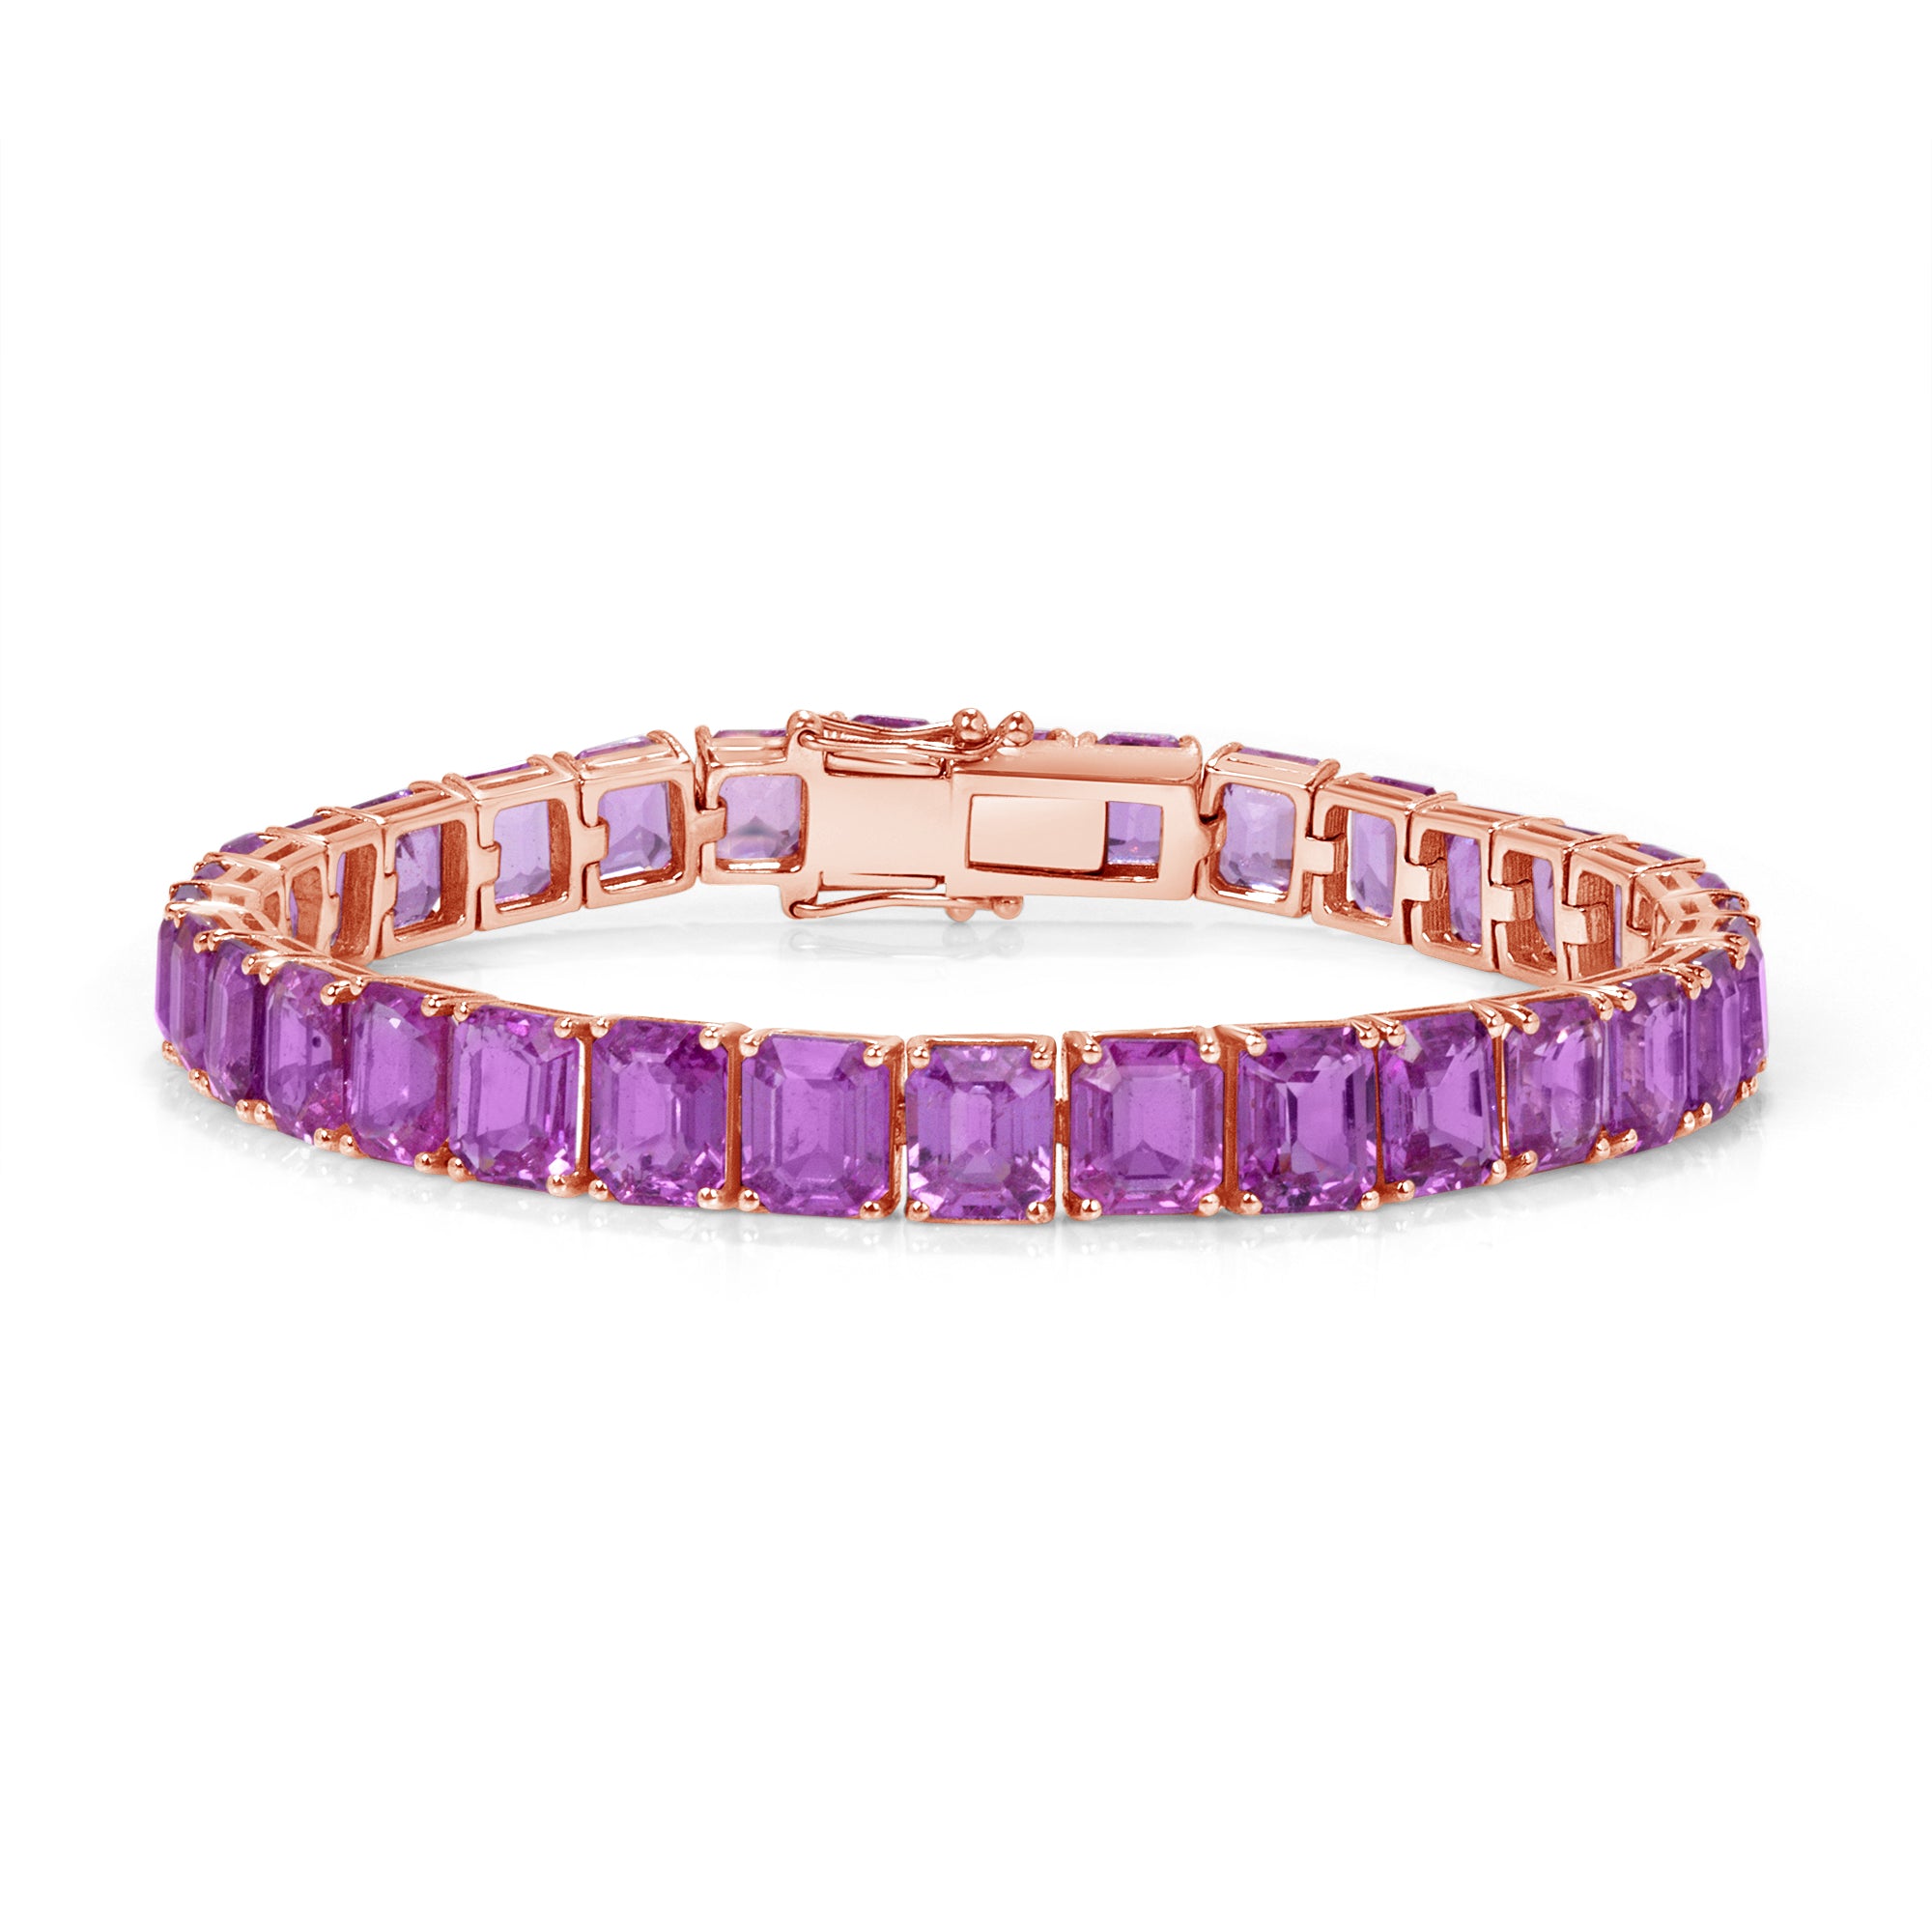 Bracelet 001-240-00110 14KY - Colored Stone Bracelets | Komara Jewelers |  Canfield, OH